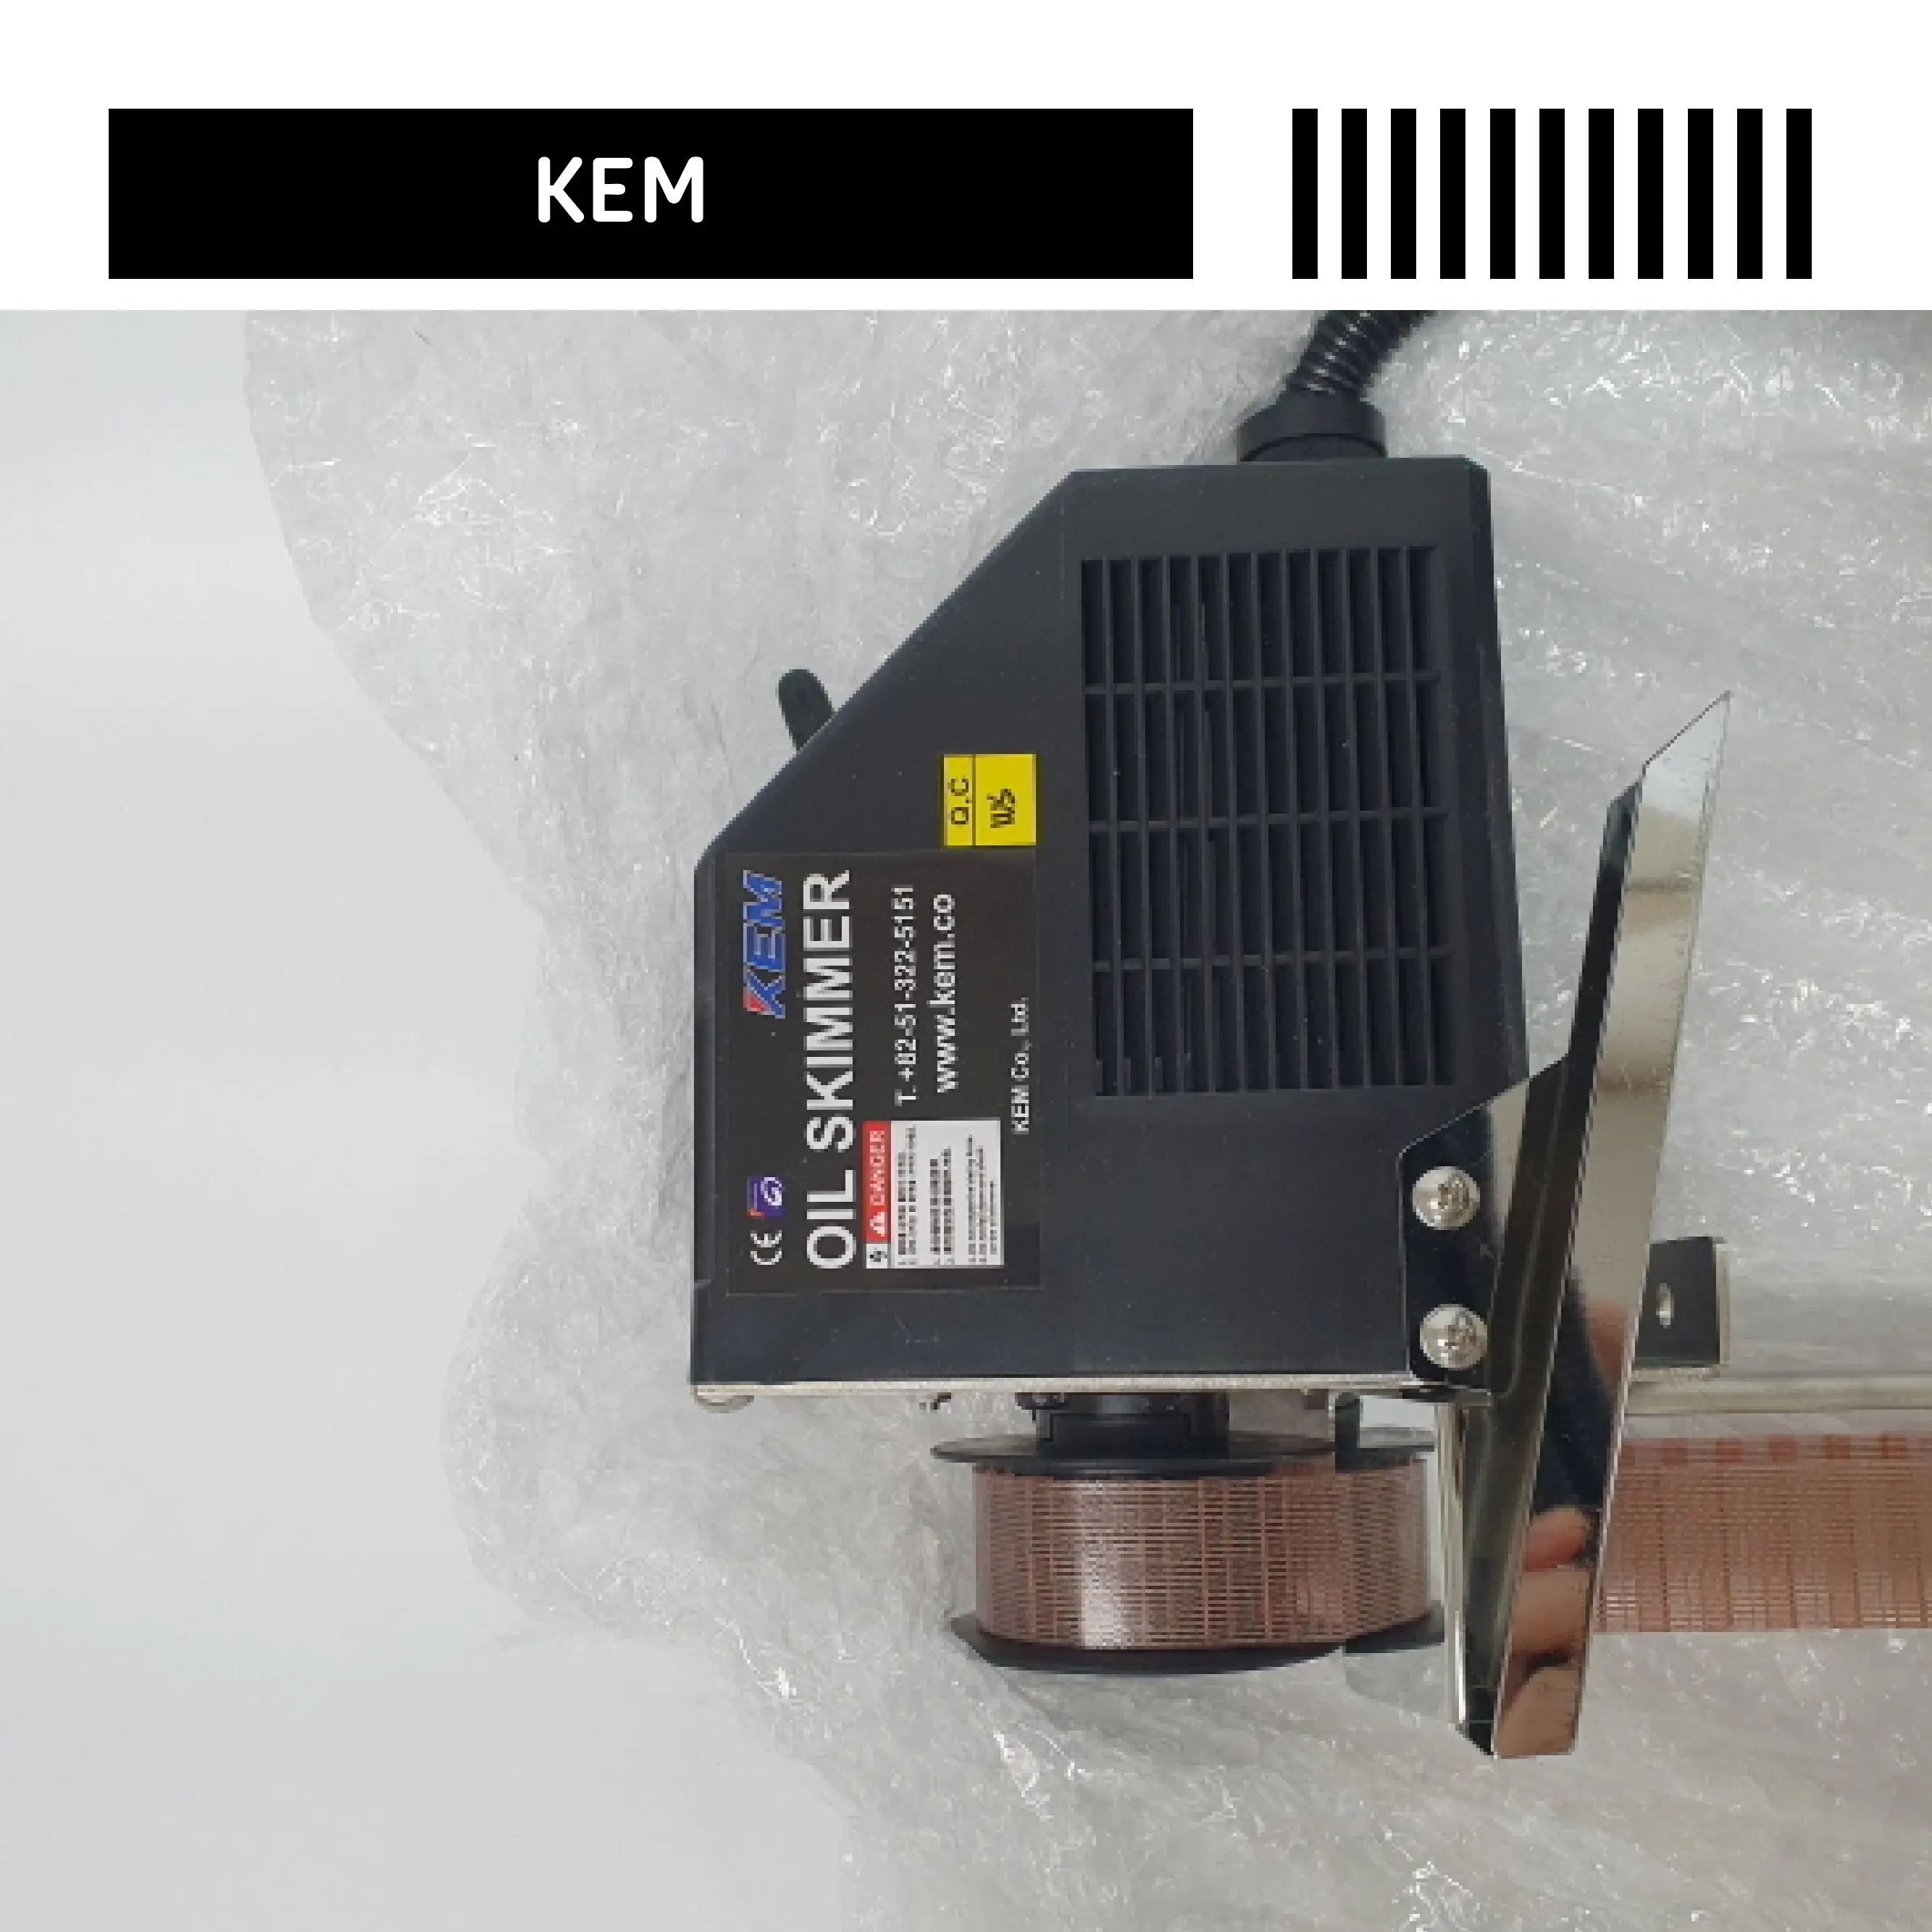 KEM HUILE SKIMMER KOS-350S-5 Made in Corée